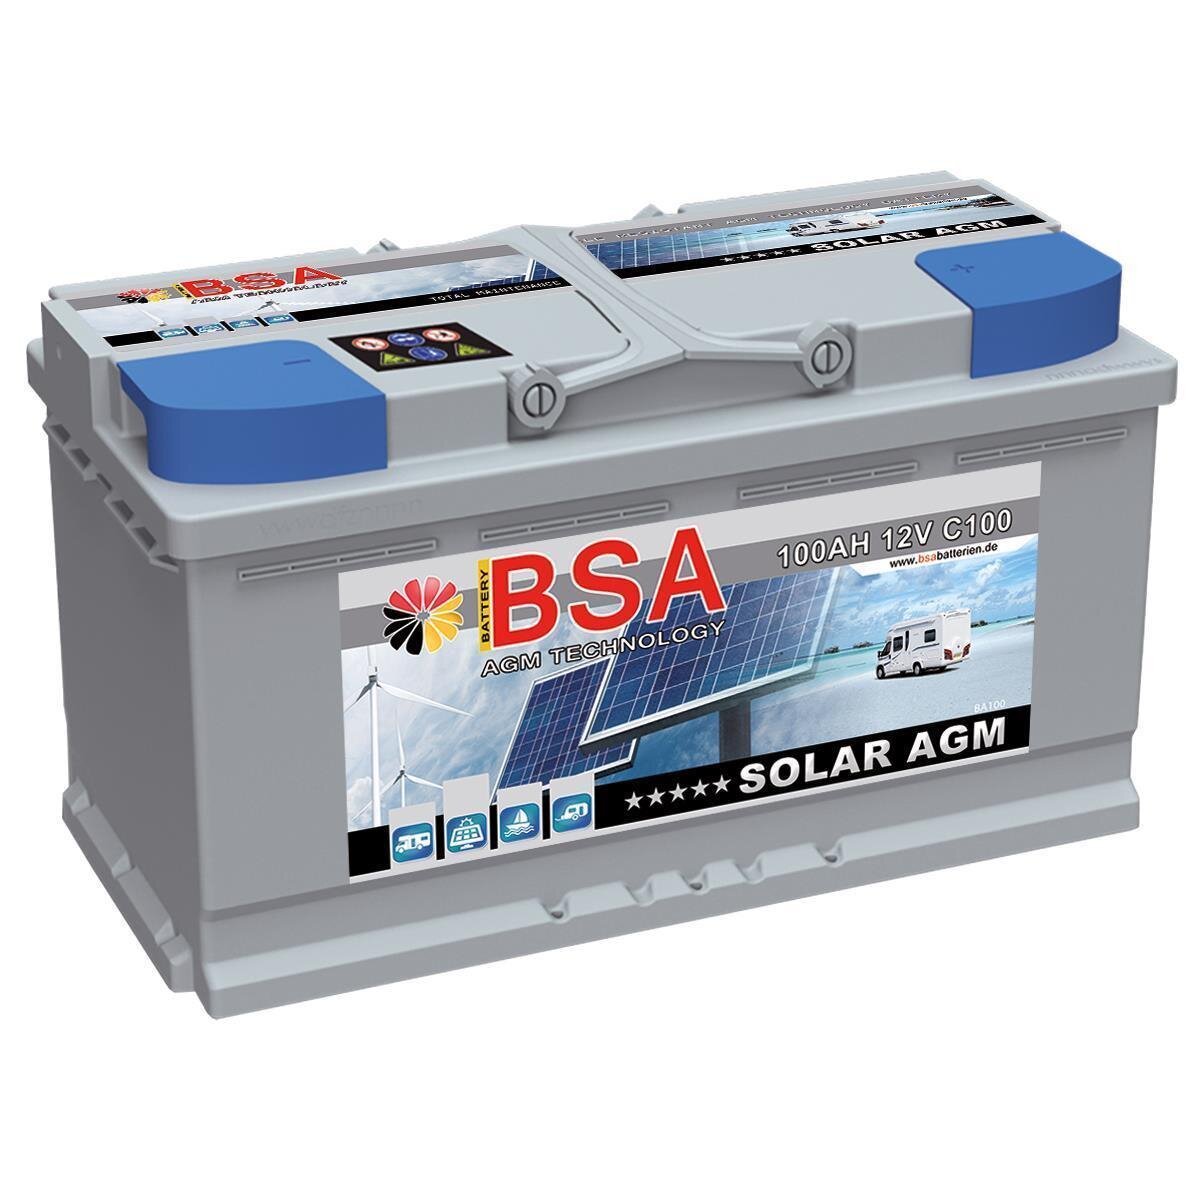 https://www.batteriespezialist.de/media/image/product/8704/lg/bsa-solarbatterie-agm-100ah-12v.jpg